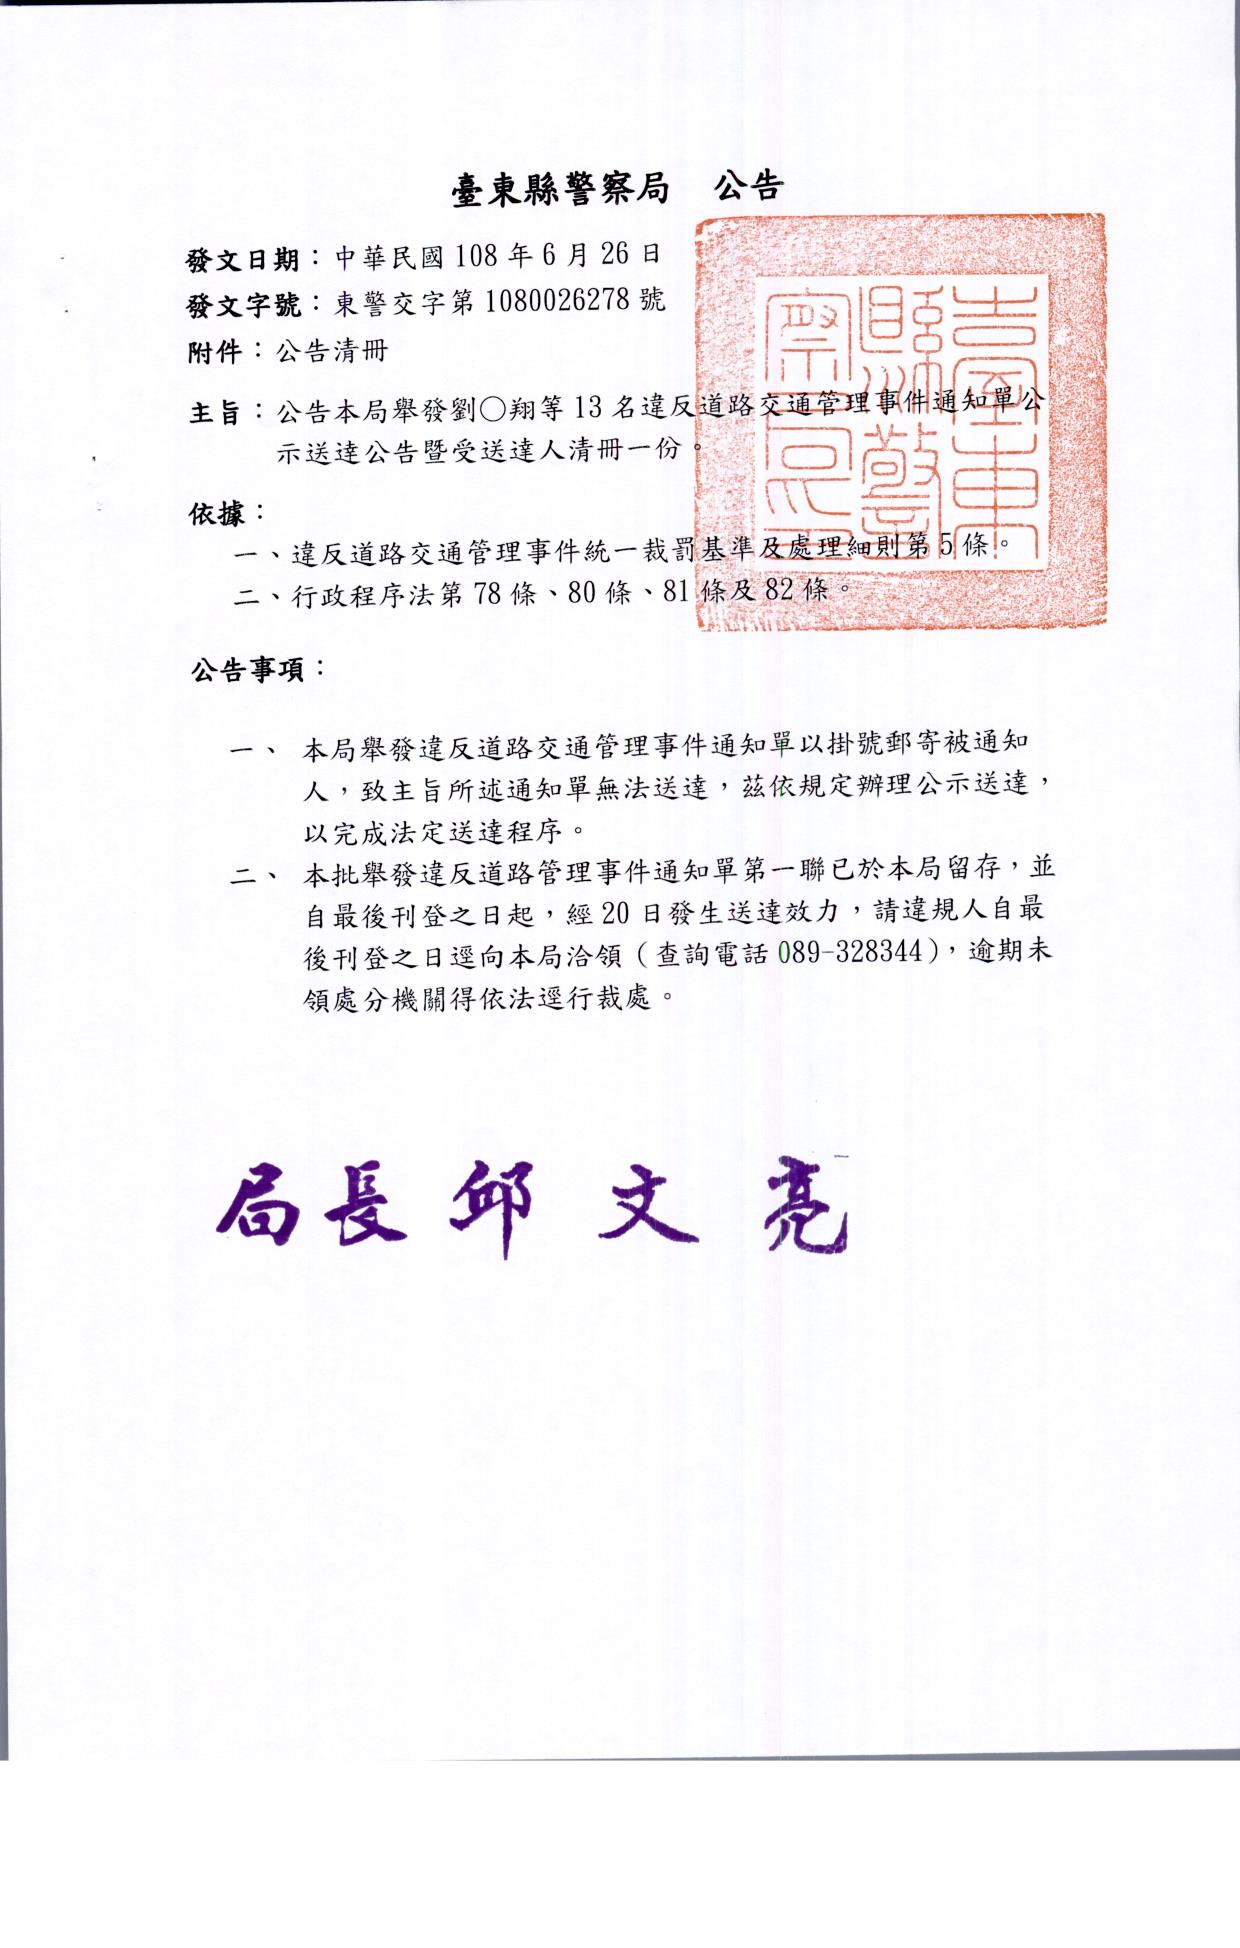 公告本局舉發劉o翔等13名違反道路交通管理事件公示送達案